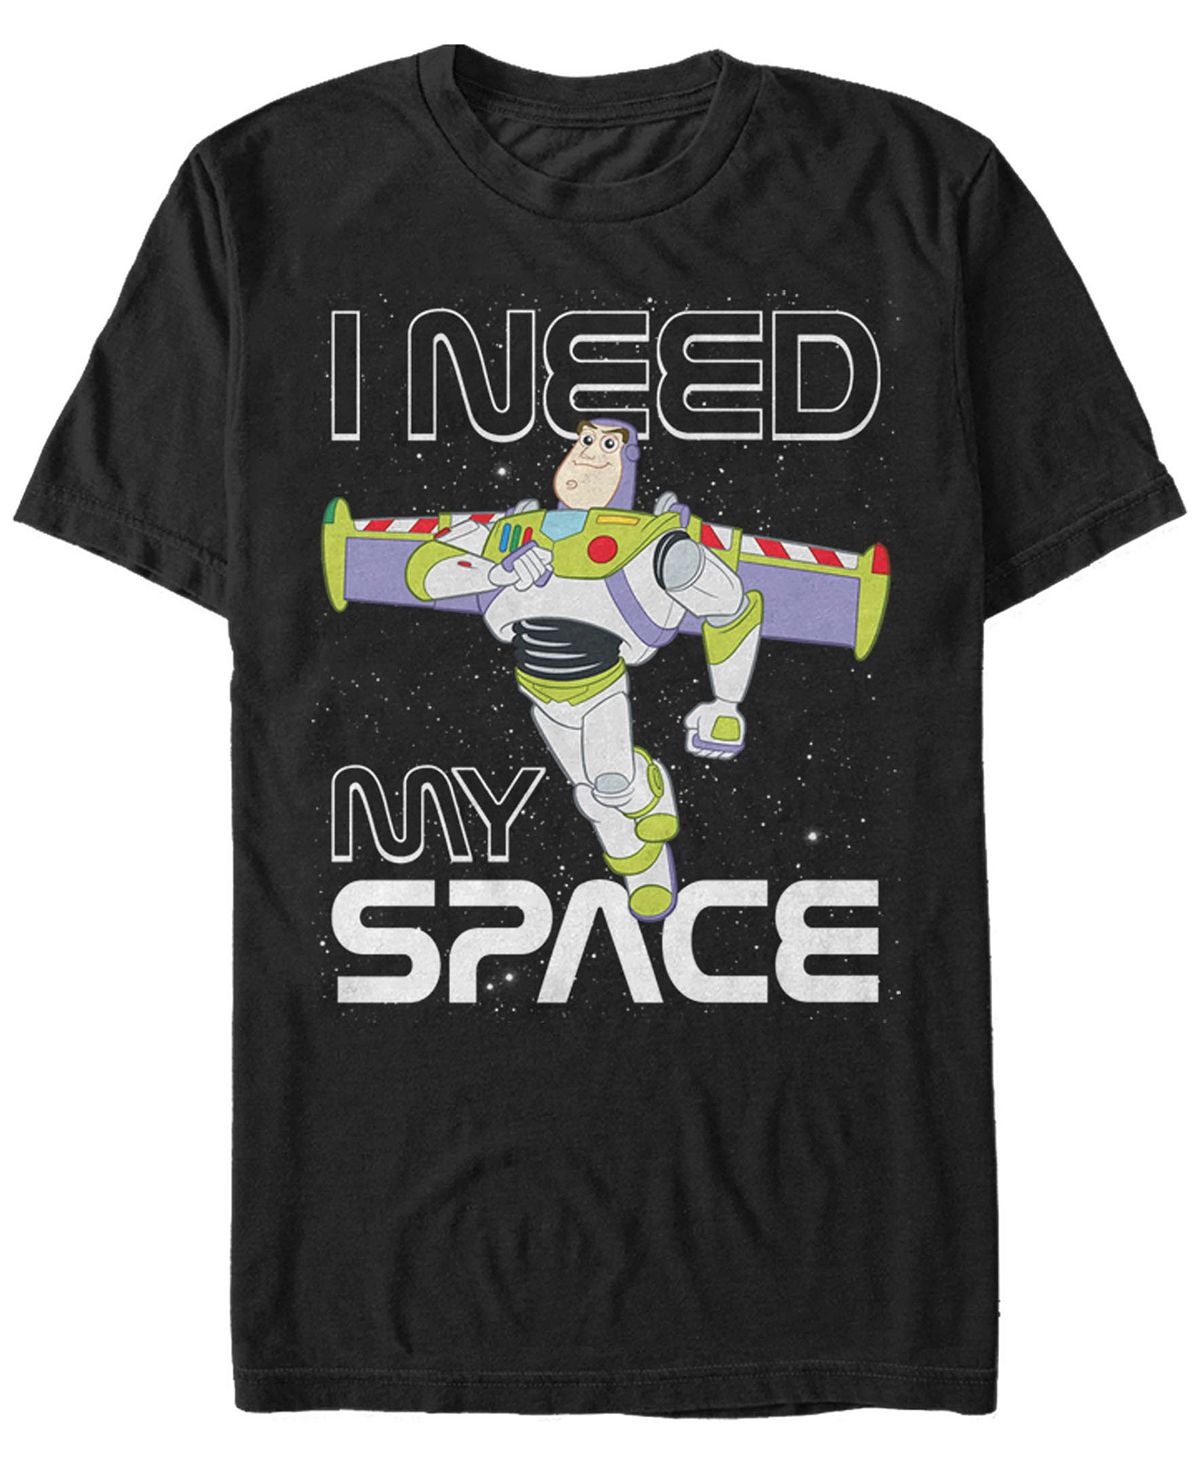 Мужская футболка с коротким рукавом из мультфильма «история игрушек» disney pixar buzz need space Fifth Sun, черный buzz aldrin s space program manager